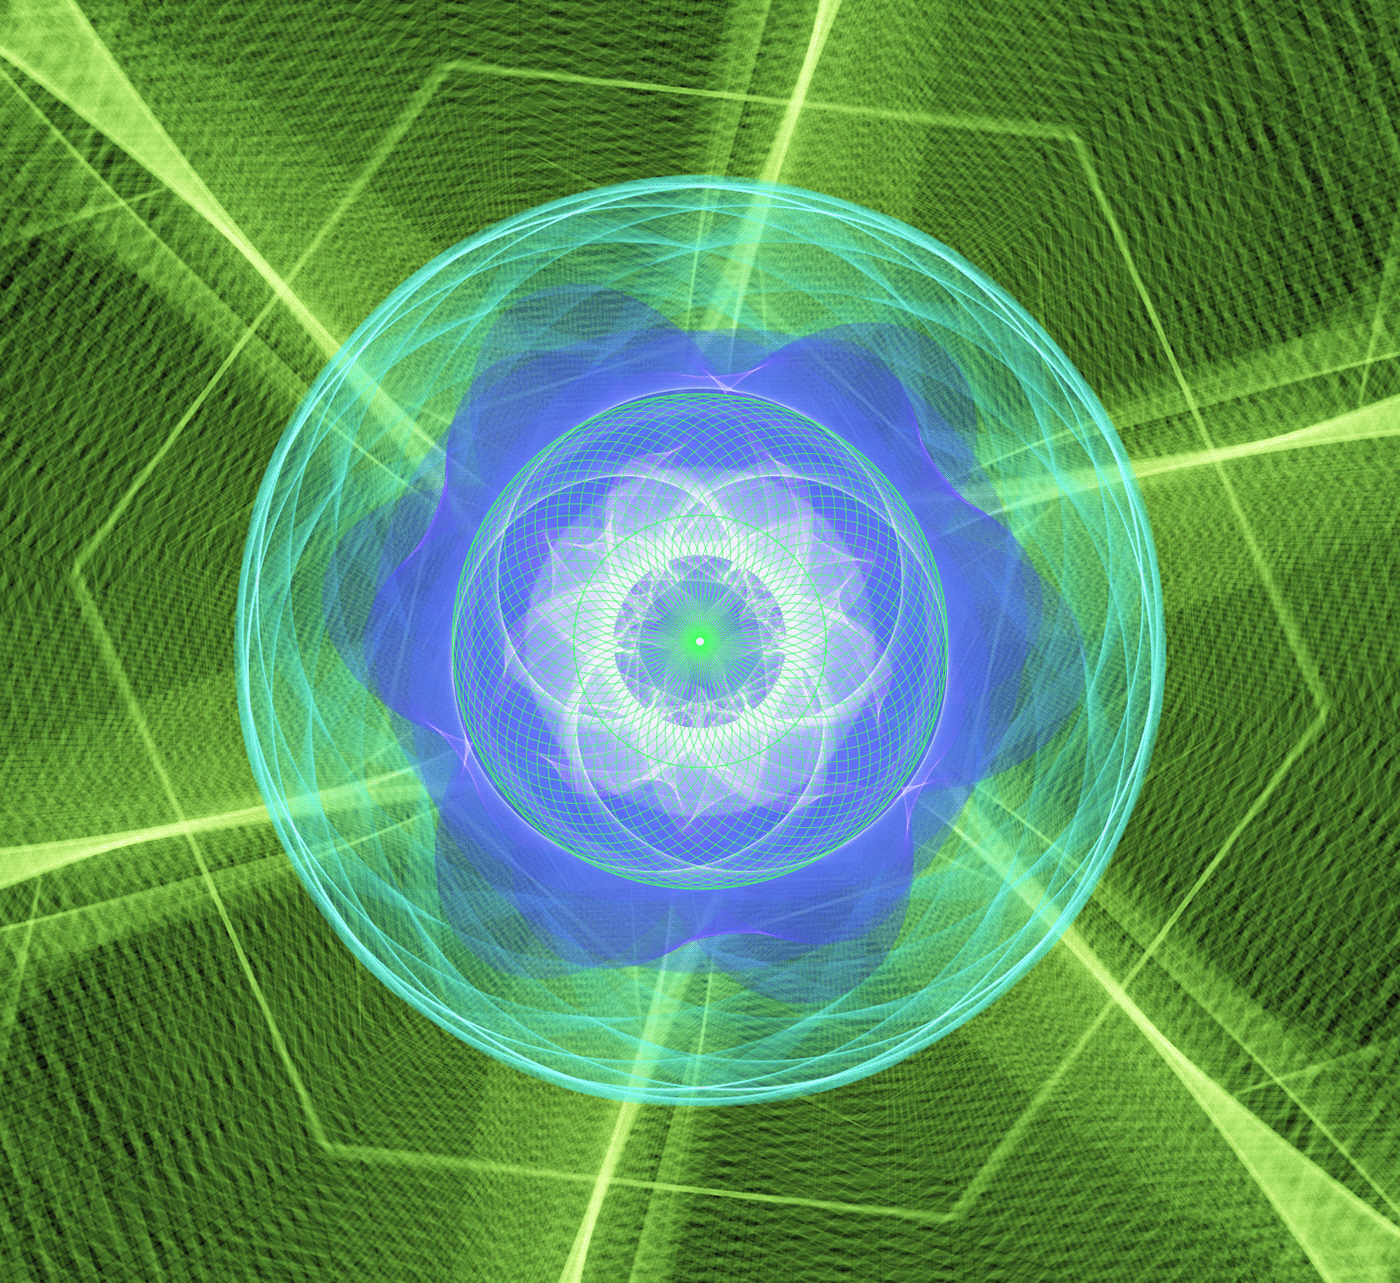 omnigeometry geometry symmetrical Mandala mandalaart Mandala Art Mandalas quantum fractal energy